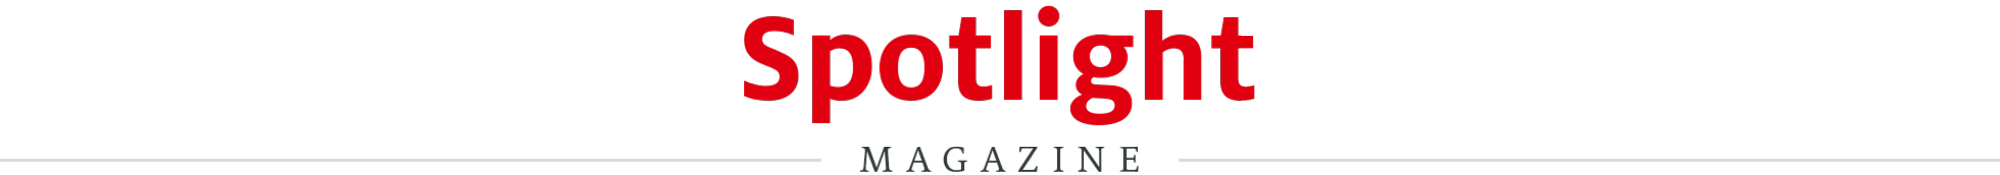 Henkel-Newsroom-Spotlight-Logo_en